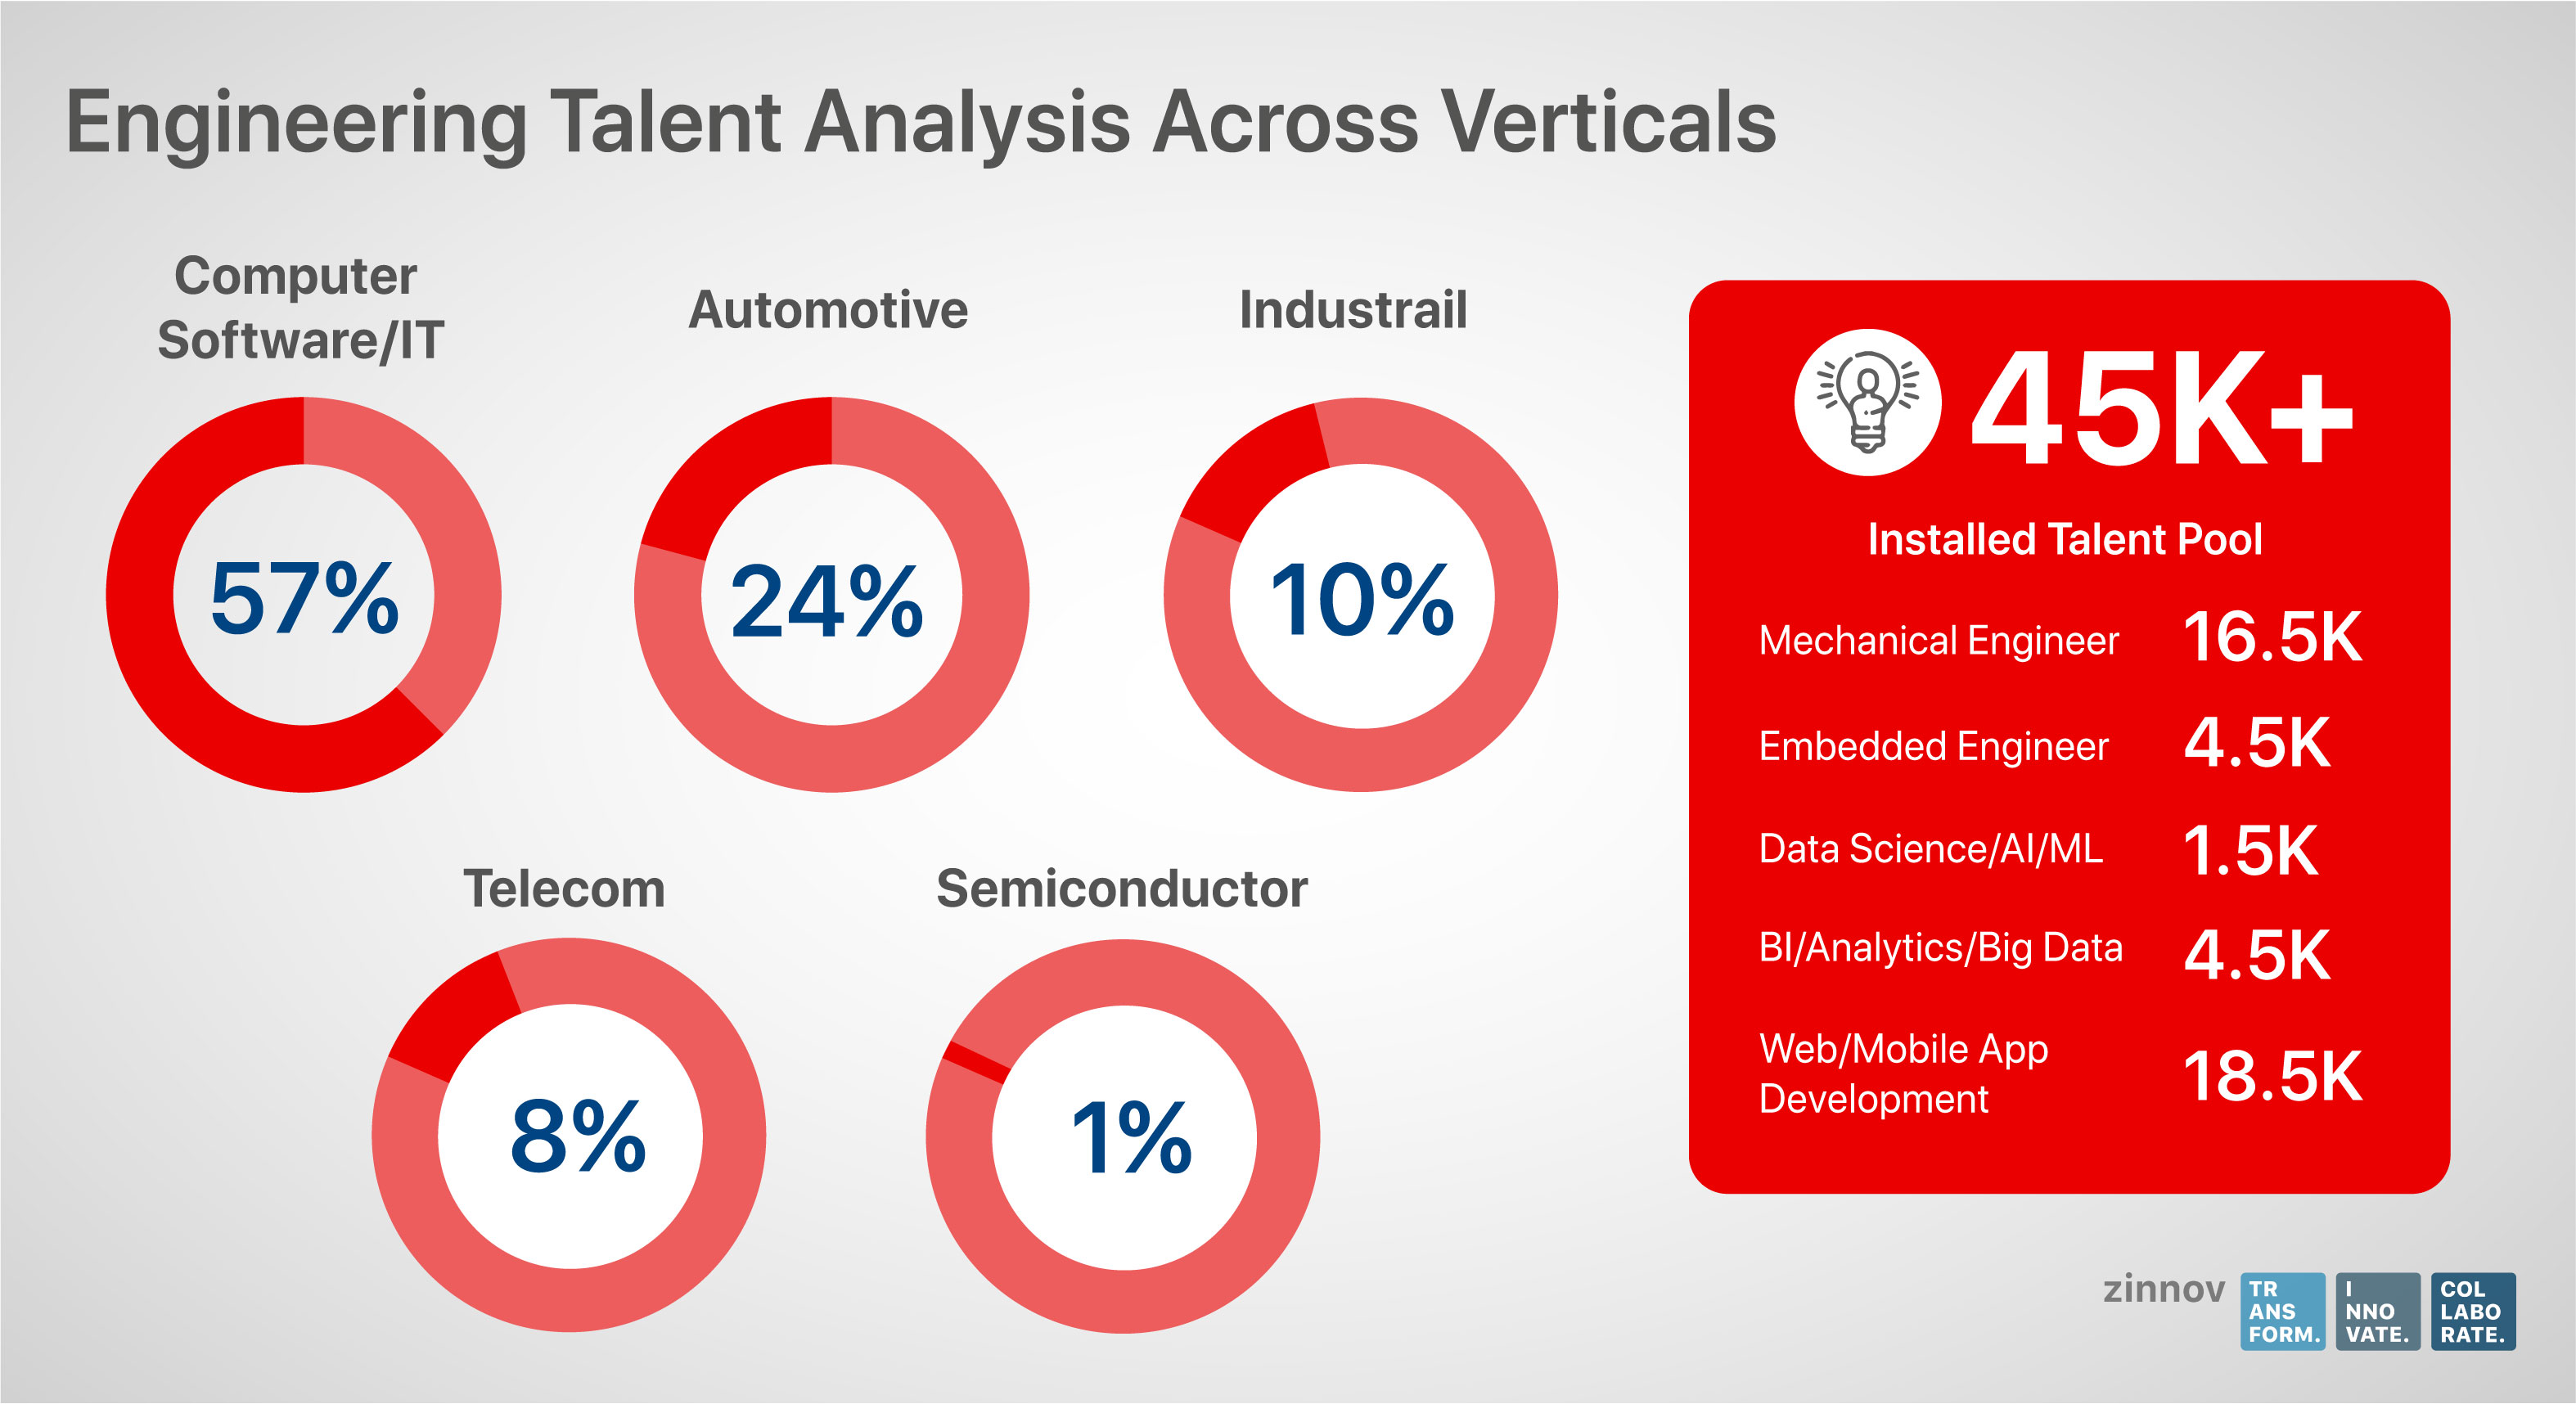 Engineering talent analysis across verticals